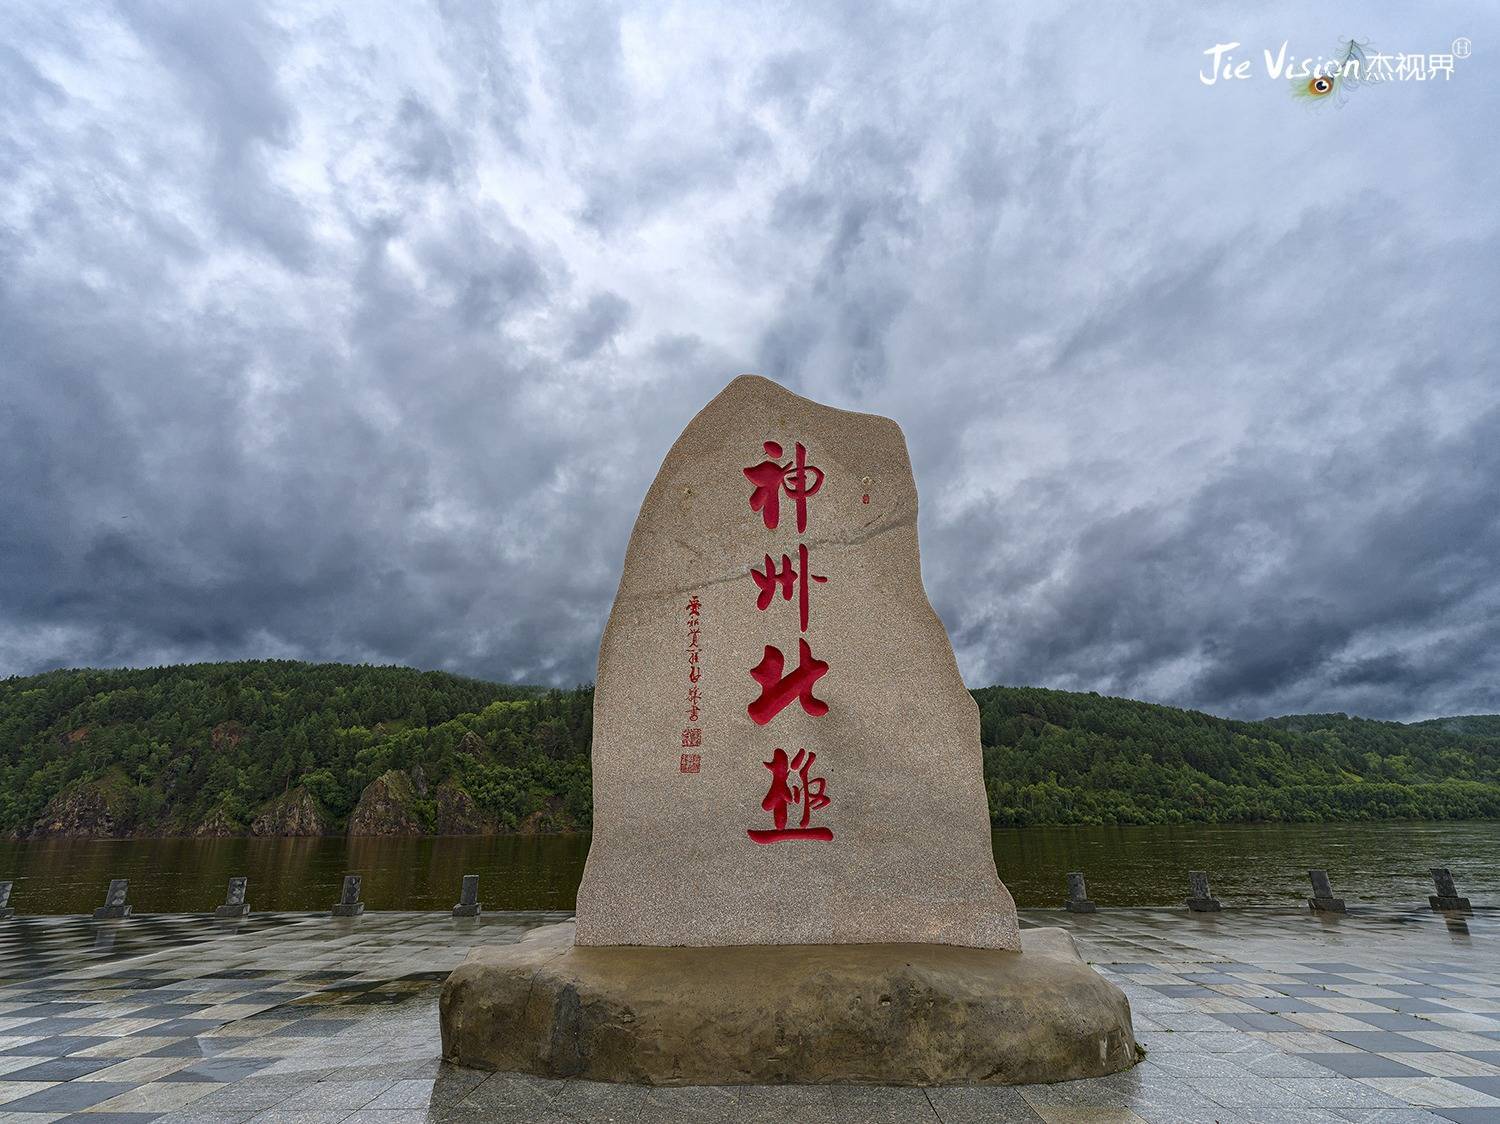 中国唯一一处可以看到极光的地方 被誉为“金鸡之冠”的漠河村